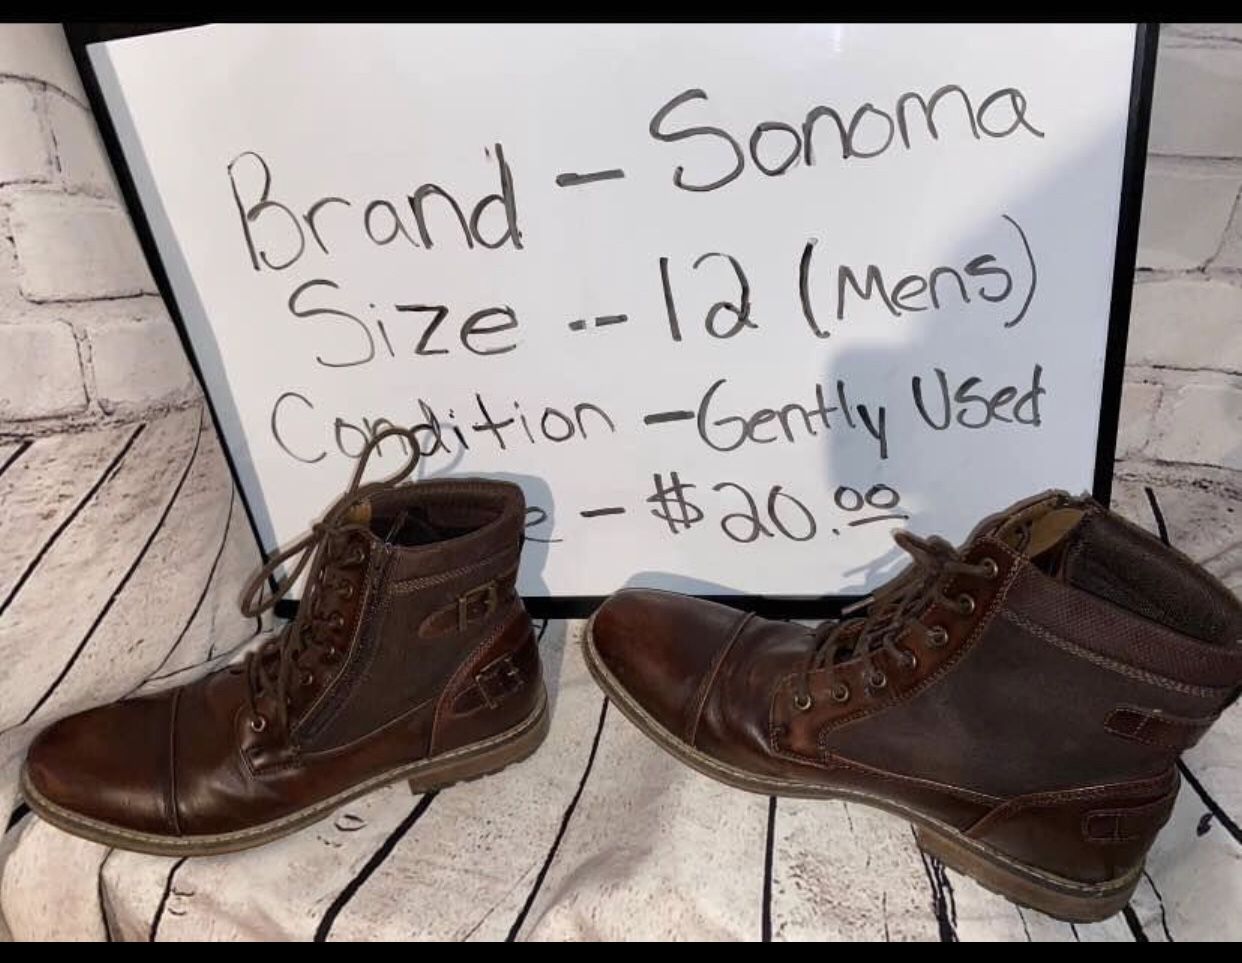 Sonoma men’s shoes boots Size 12